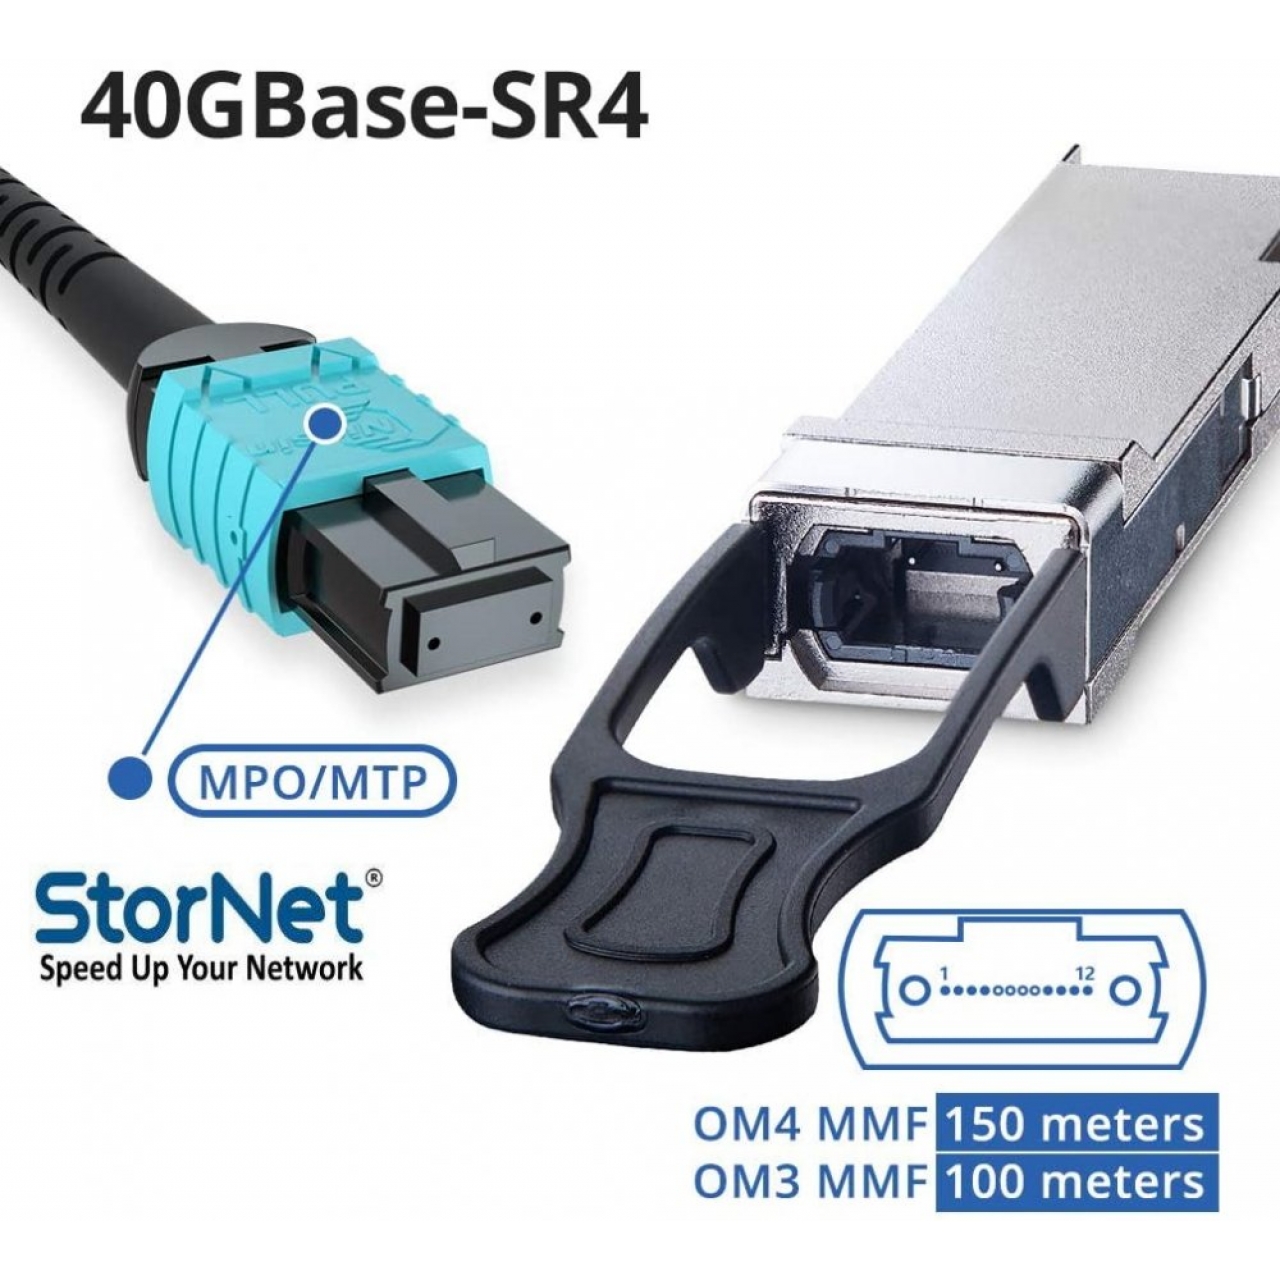 40GBASE-SR4 QSFP+ SR4 850nm 150m Transceiver Modül for Cisco